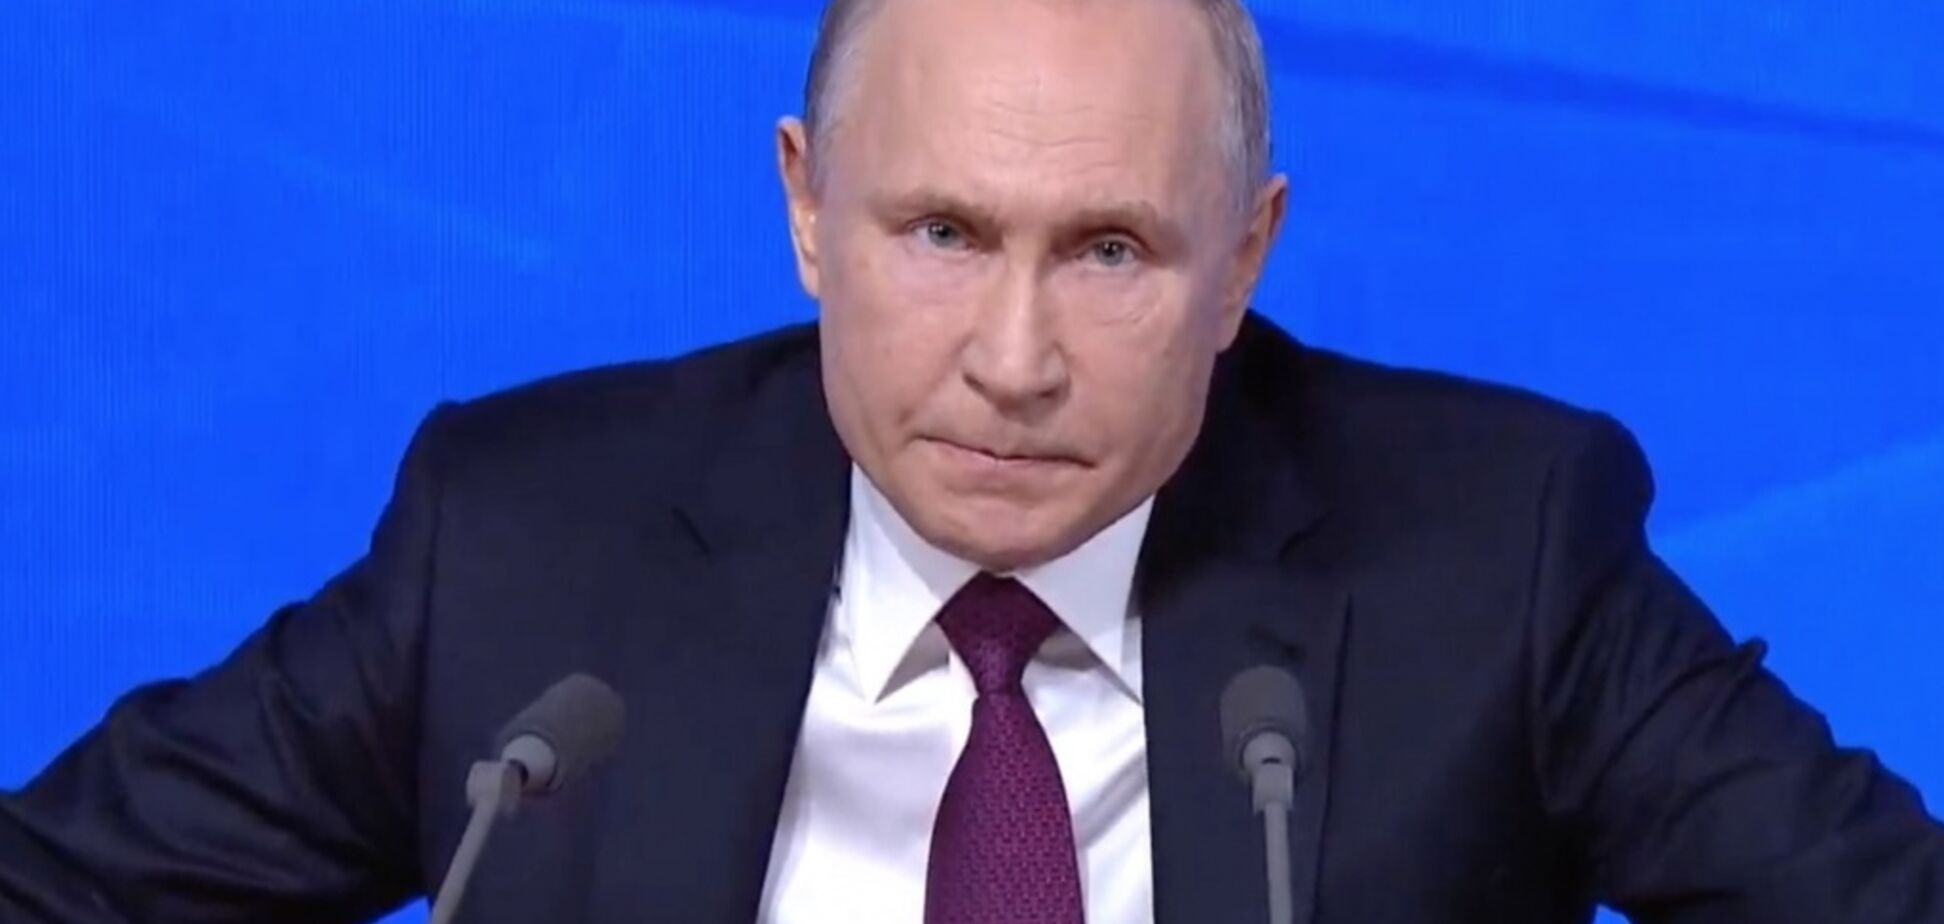 'Безнадійно хворий': зріст Путіна розсмішив мережу